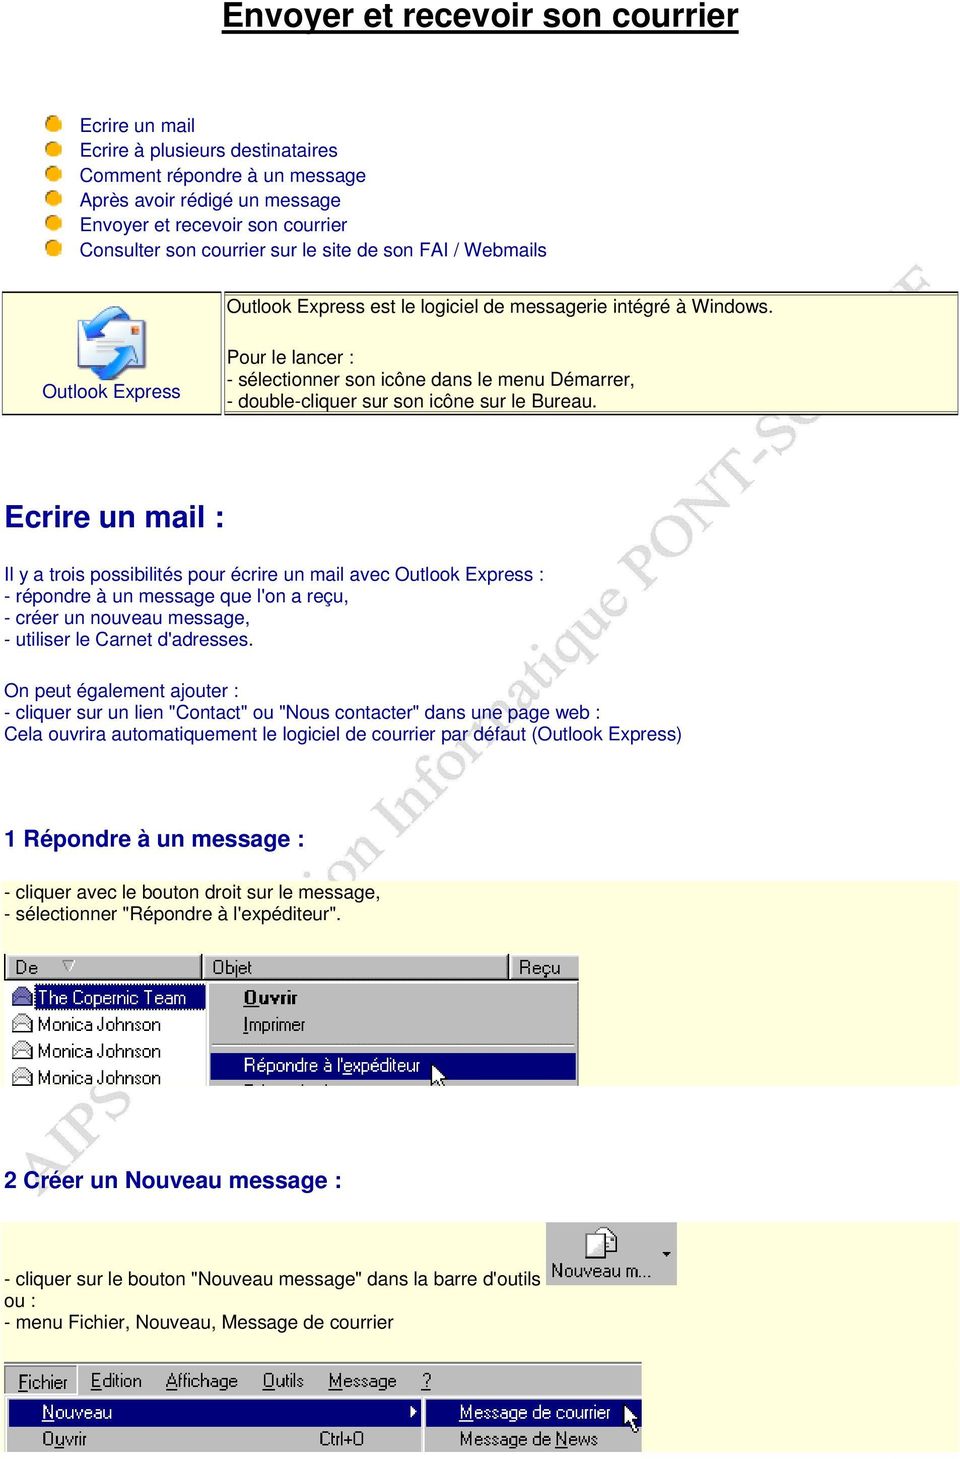 Outlook Express Pour le lancer : - sélectionner son icône dans le menu Démarrer, - double-cliquer sur son icône sur le Bureau.